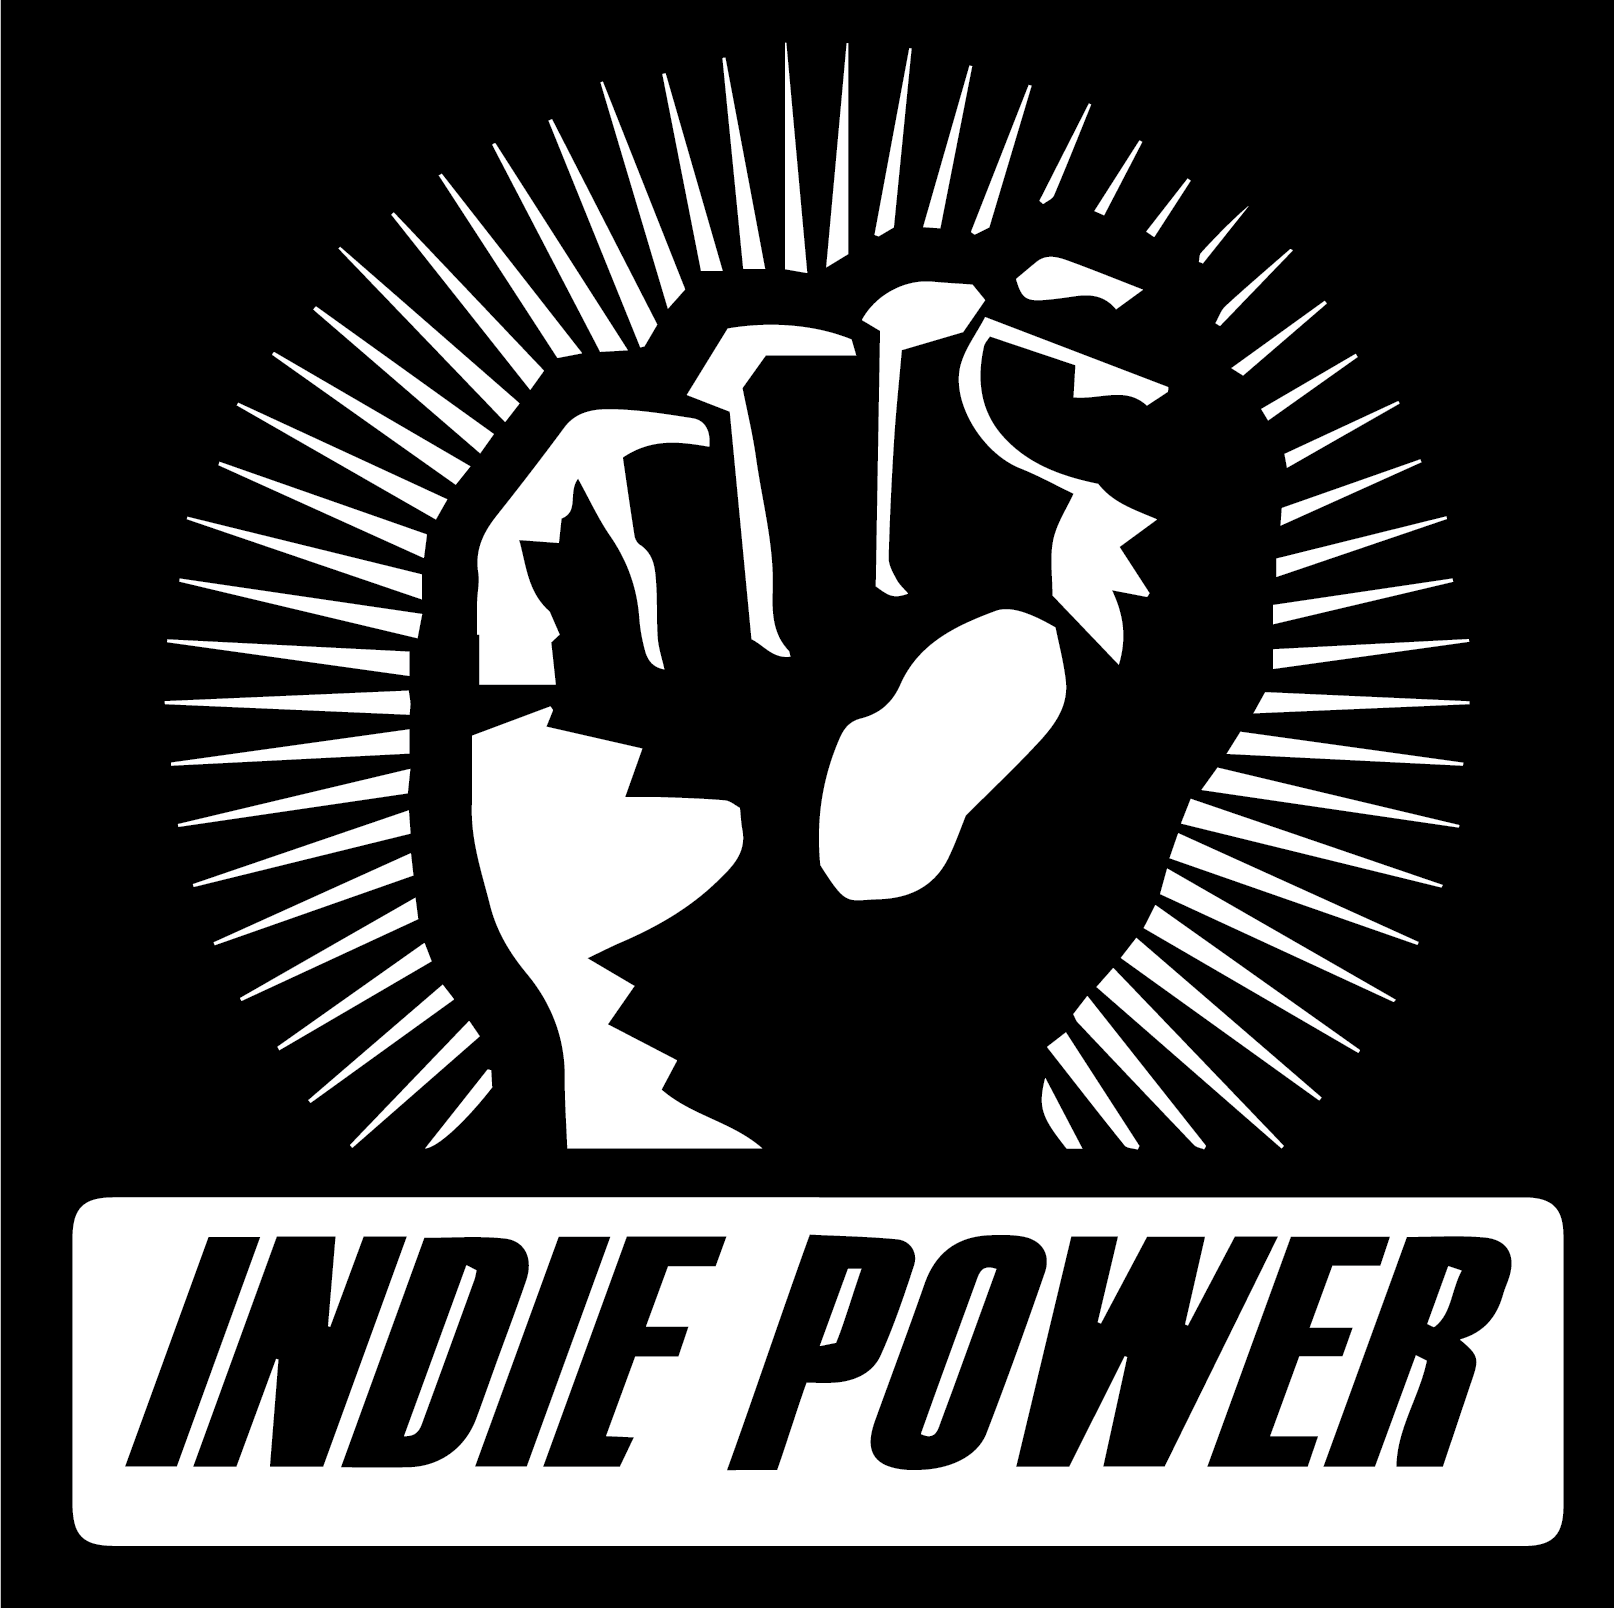 Indie Power